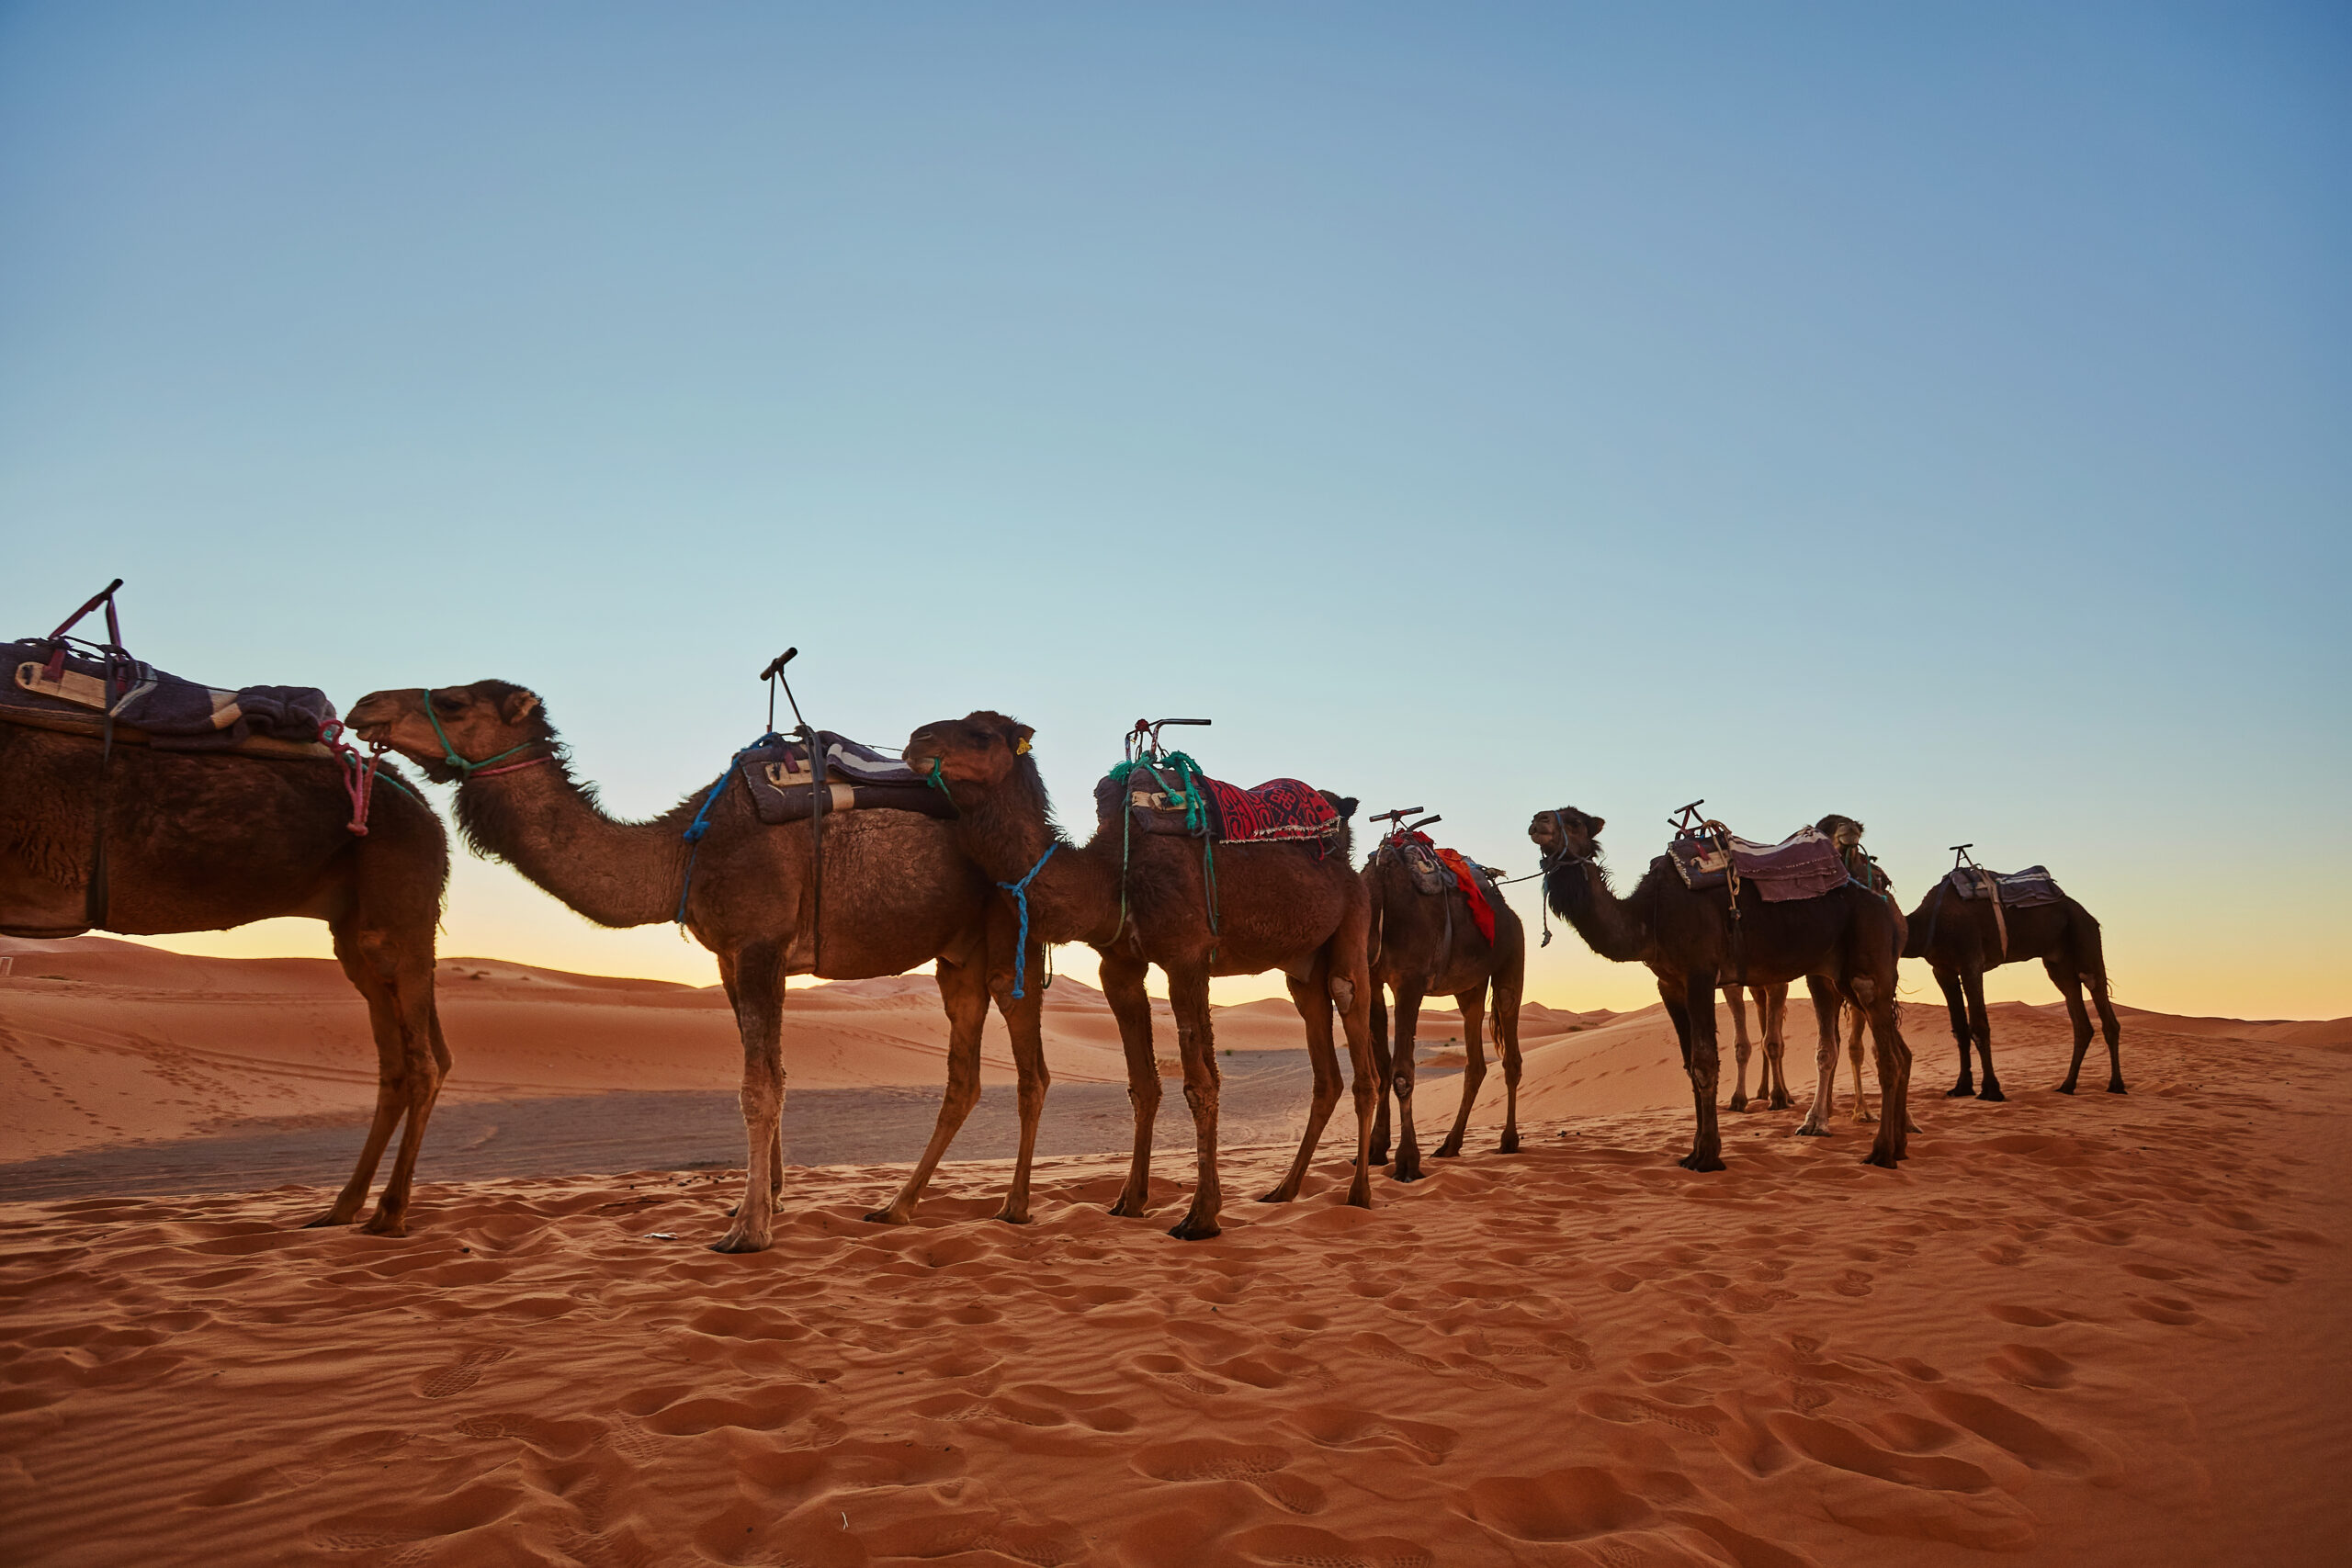 Camel caravan going through the sand dunes in the Sahara Desert, Morocco.